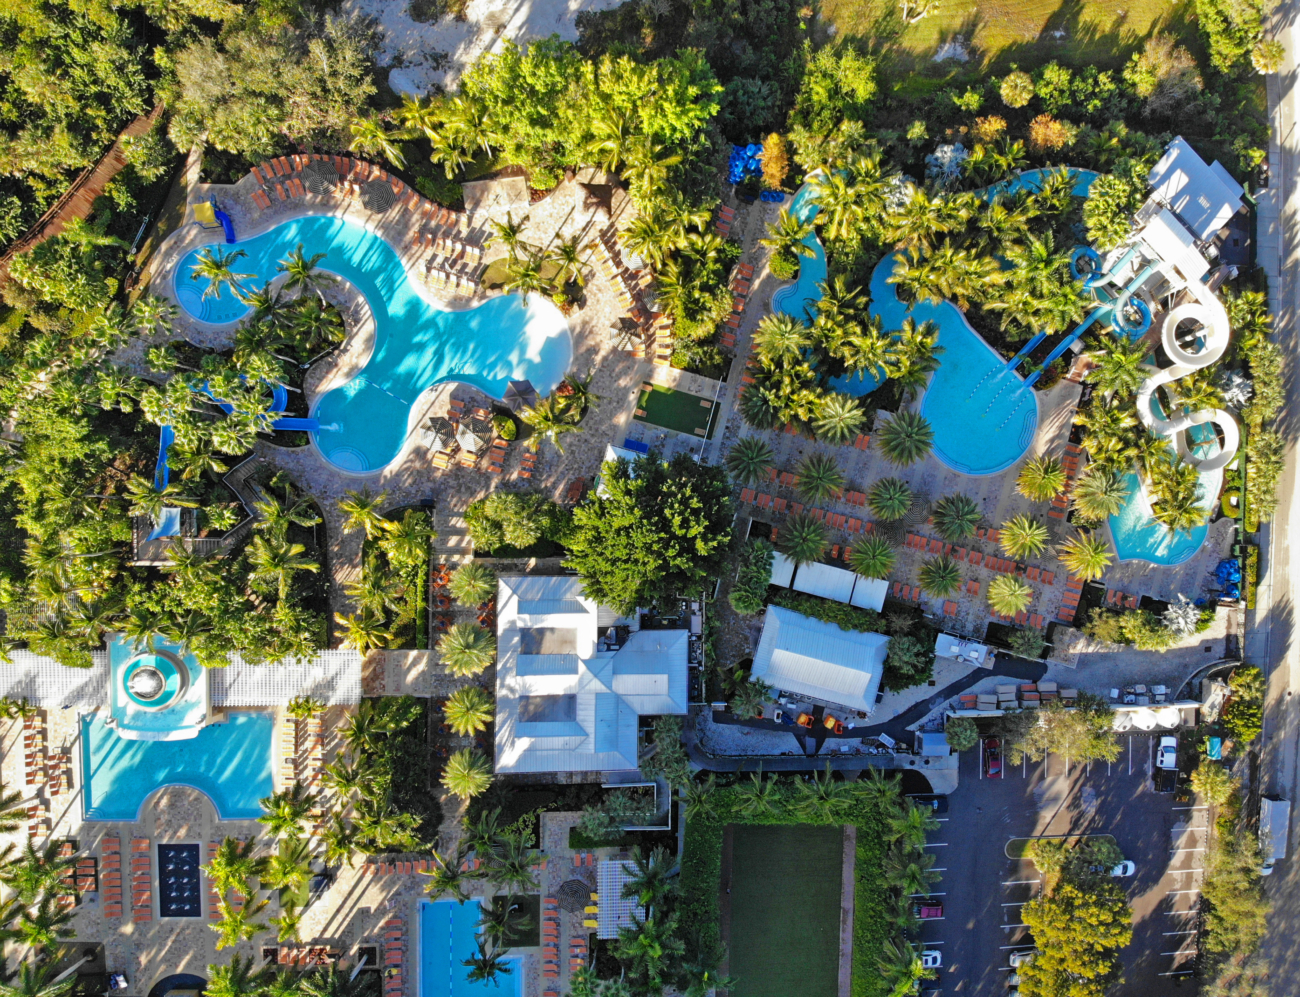 Aerial view of pools and slides at Hyatt Regency Coconut Point in Bonita Springs, Flroida